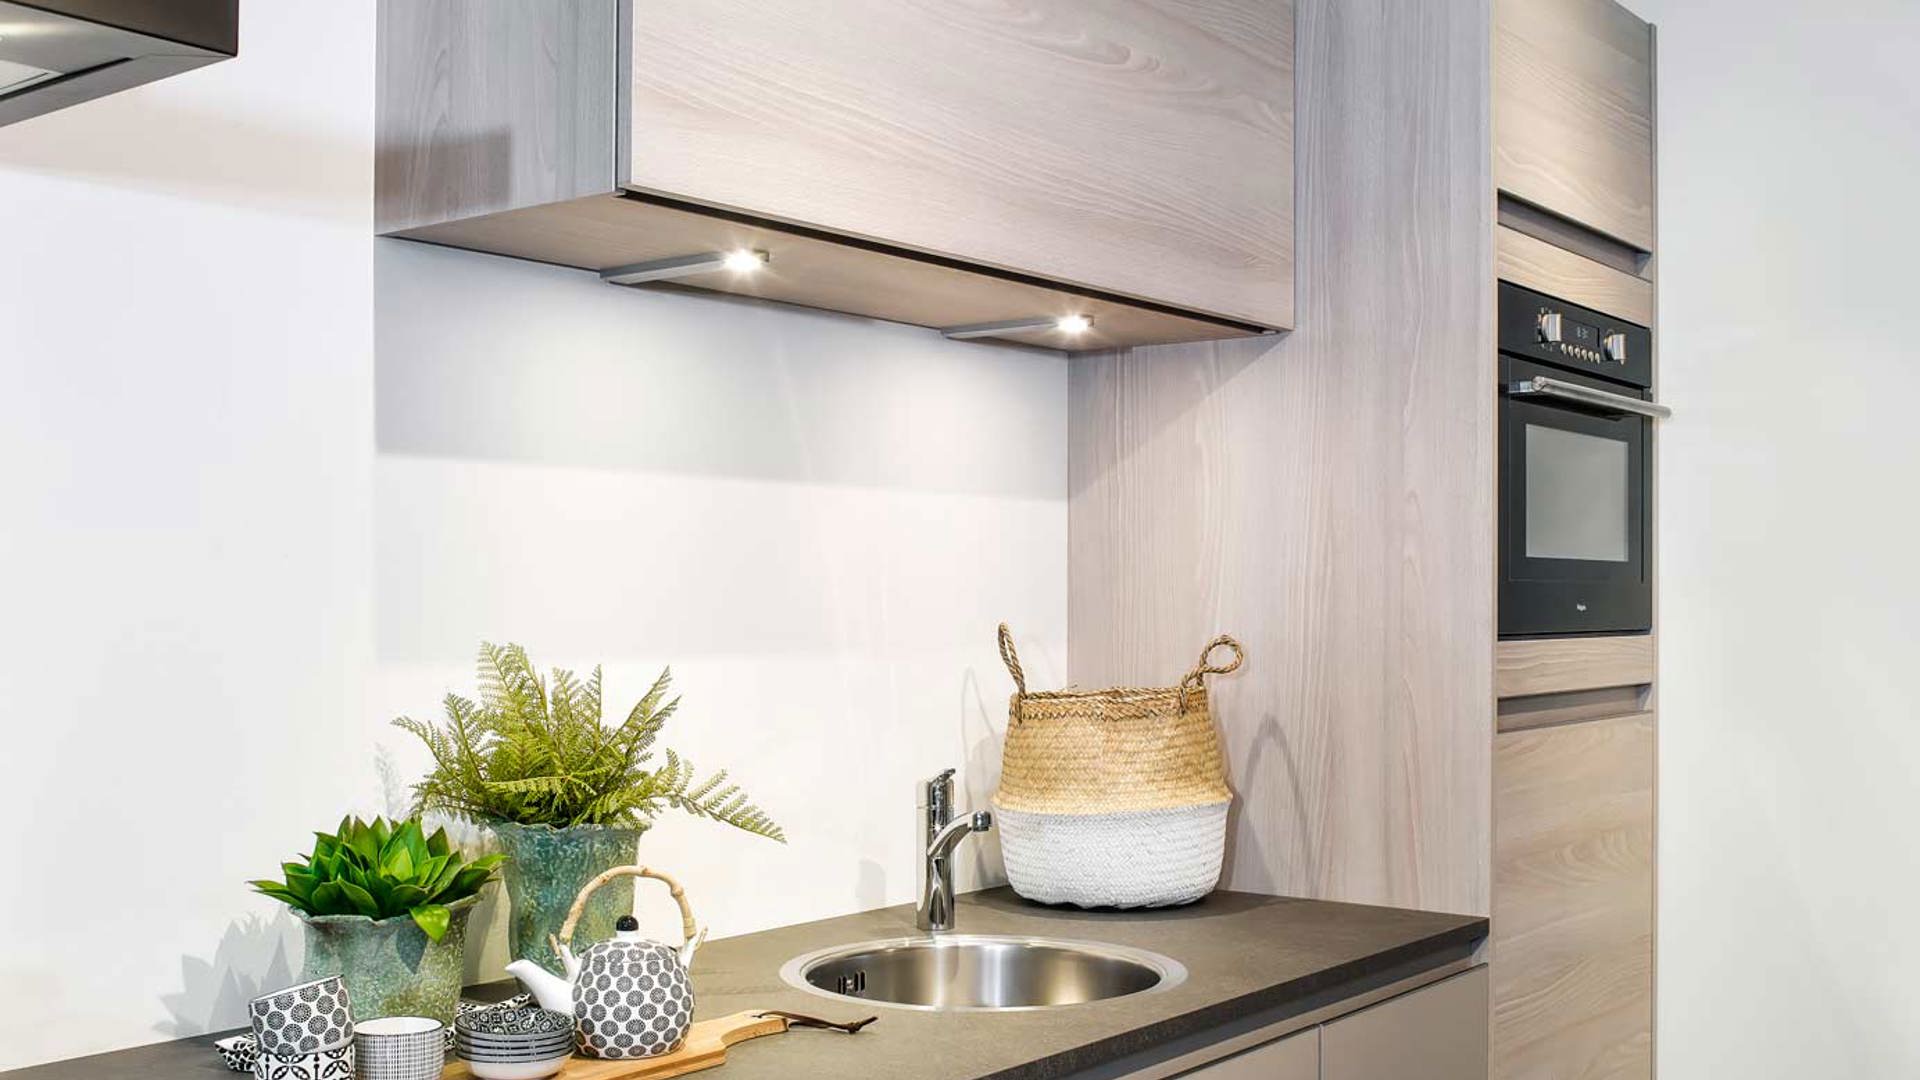 Publicatie Kast Regenachtig Kleine keuken in moderne stijl. Bekijk foto's en prijzen!